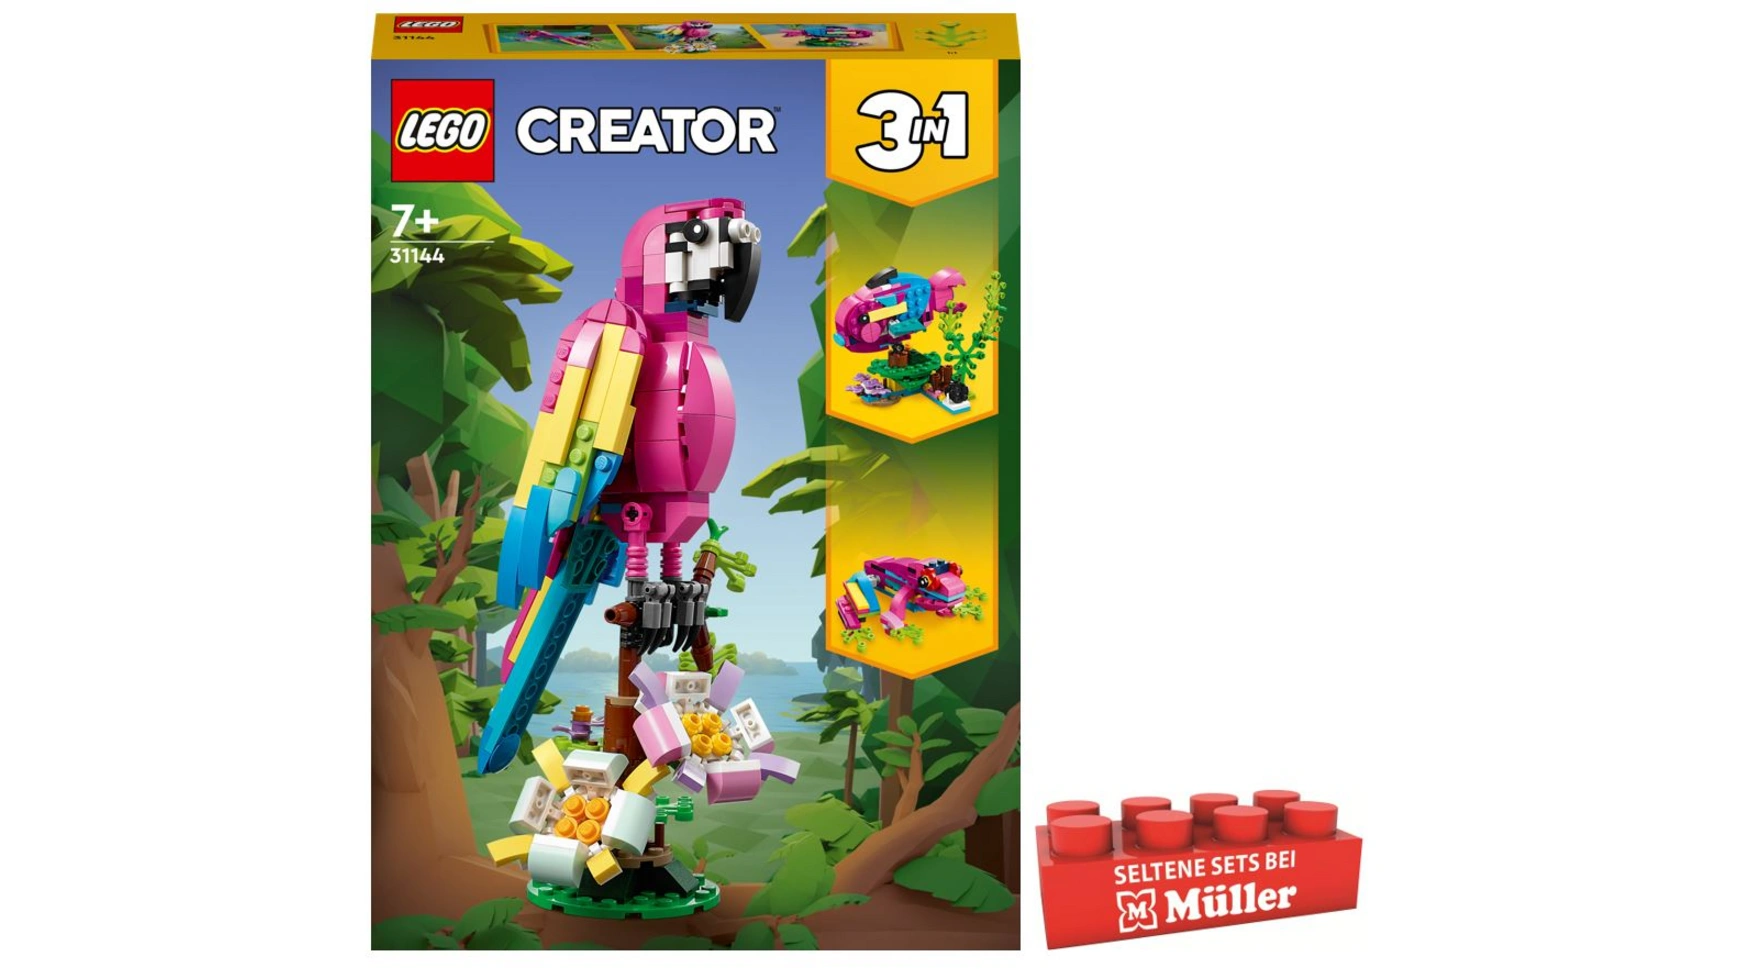 lego creator 3in1 набор игрушек с милыми собаками и животными Lego Creator 3in1 Набор экзотических розовых попугаев с тремя животными